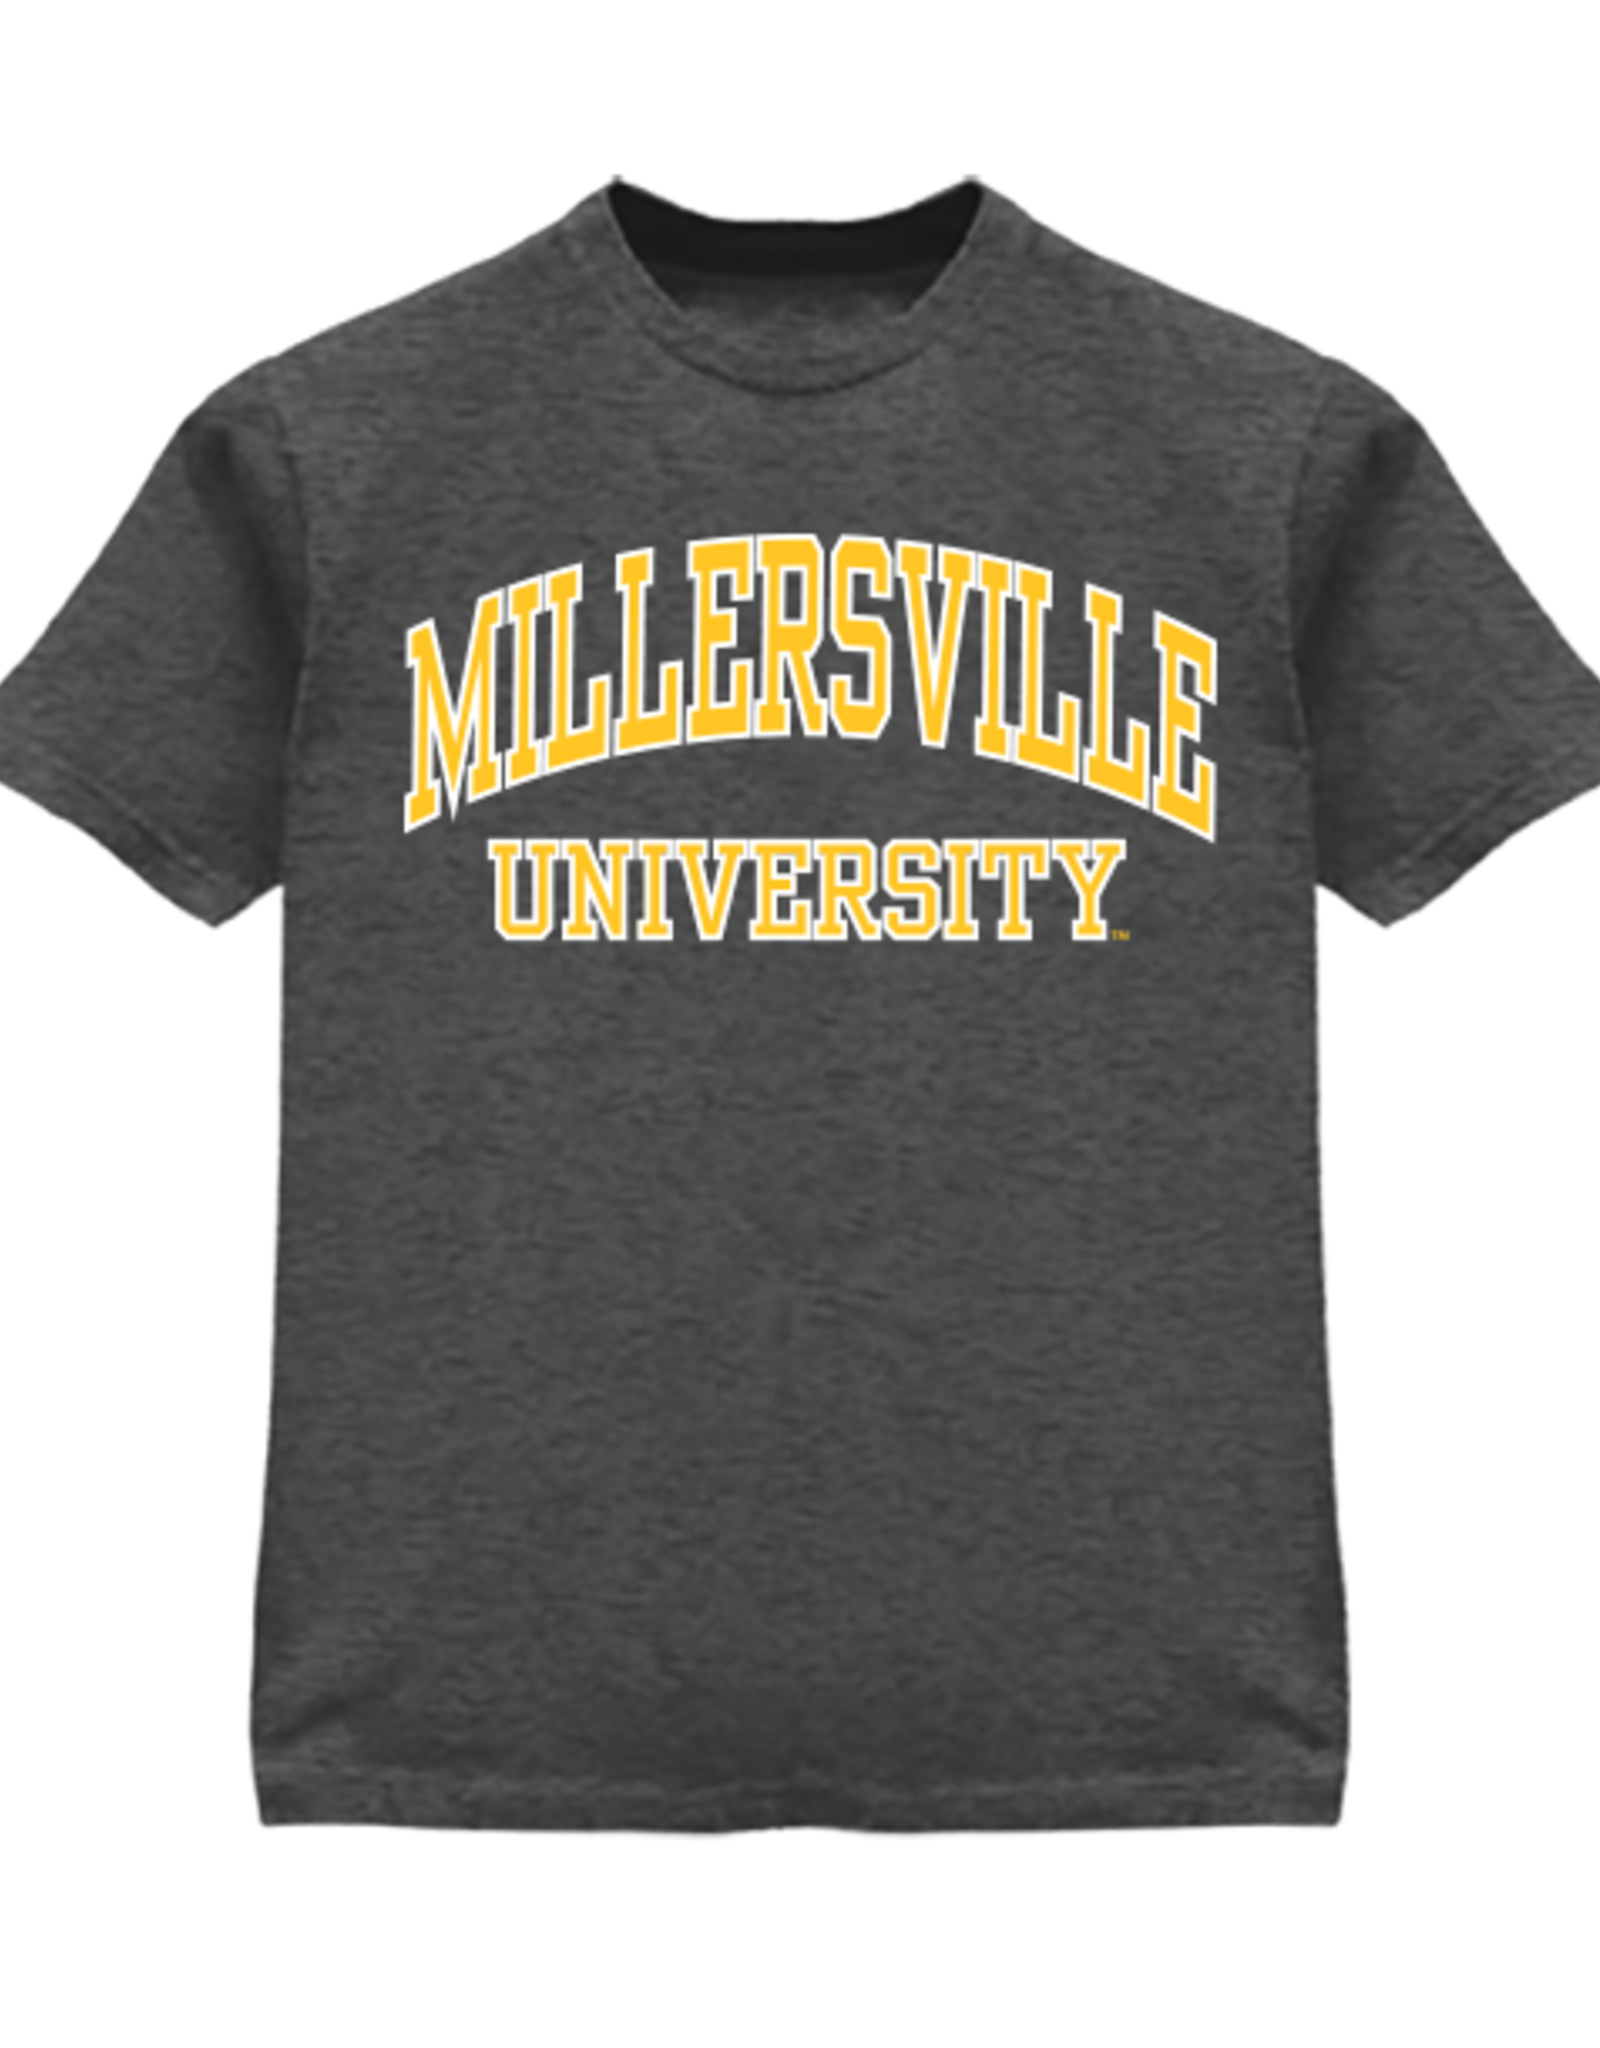 Millersville University Store - Millersville University Store